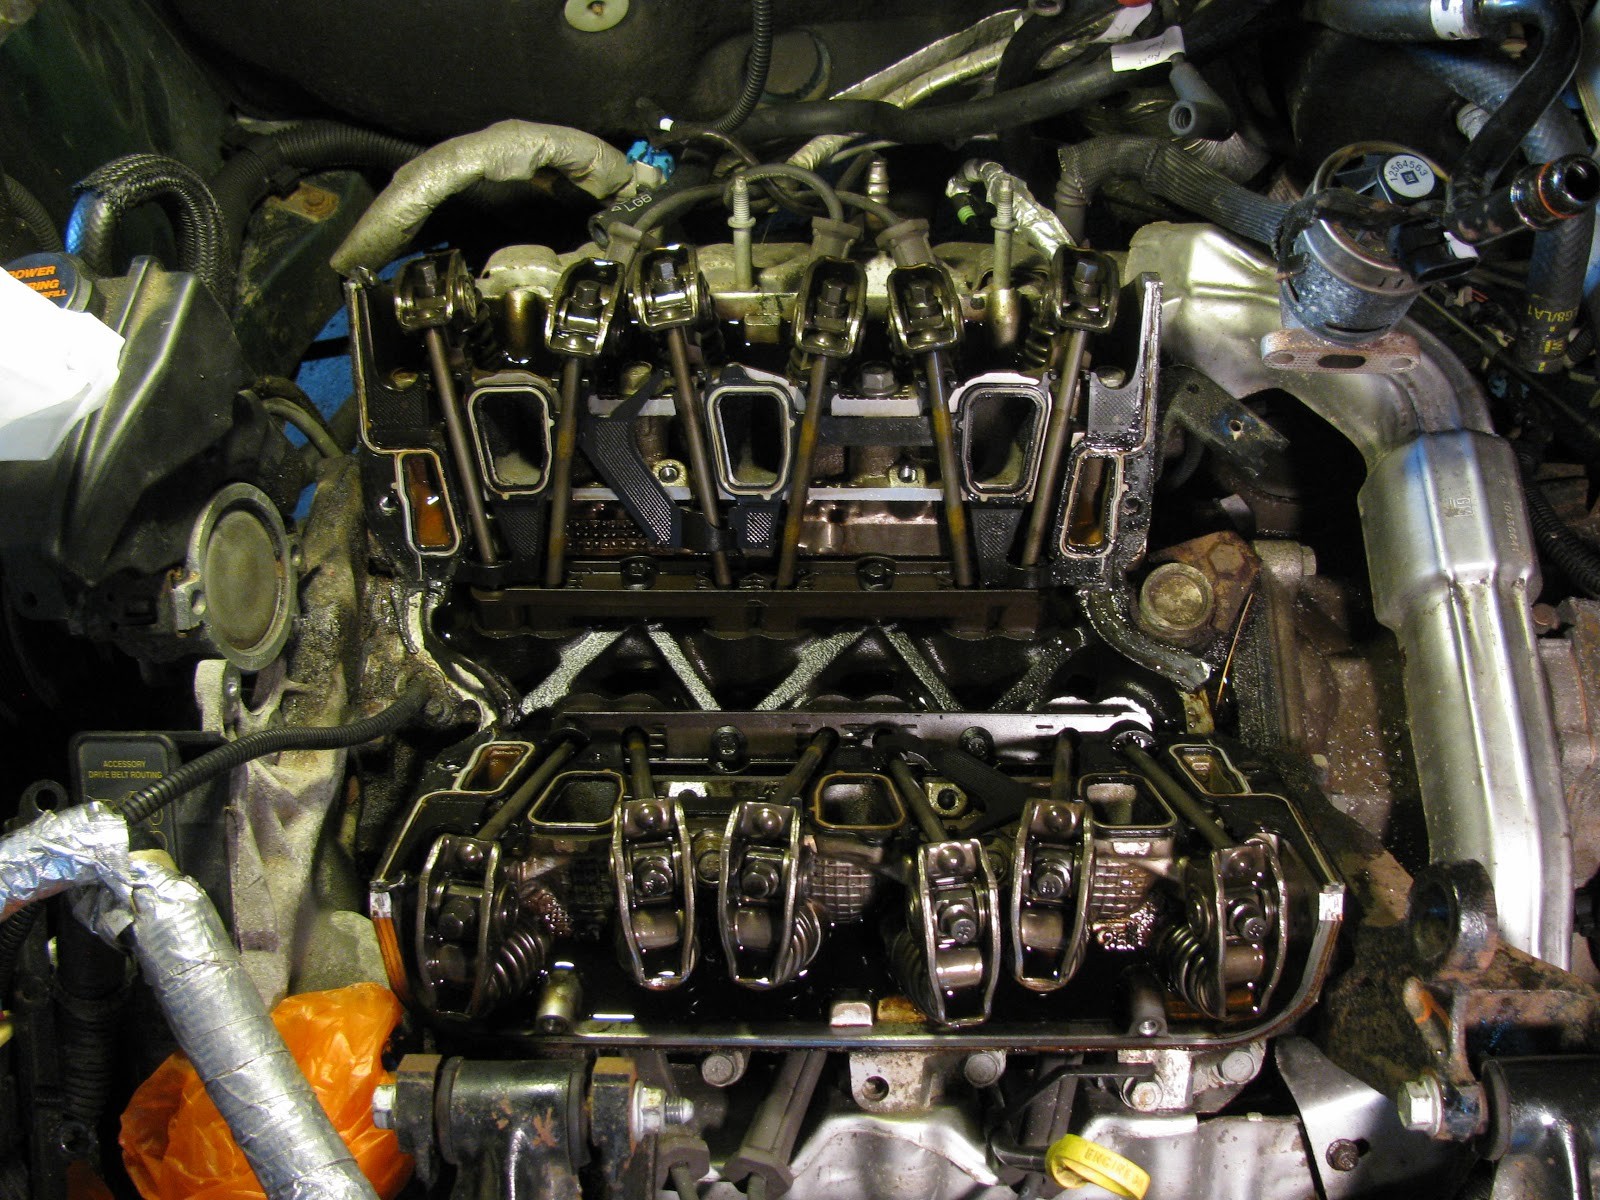 1997 Pontiac Grand Am Engine Diagram the original Mechanic 3 1l Engine Gm Replacing Intake Manifold Of 1997 Pontiac Grand Am Engine Diagram